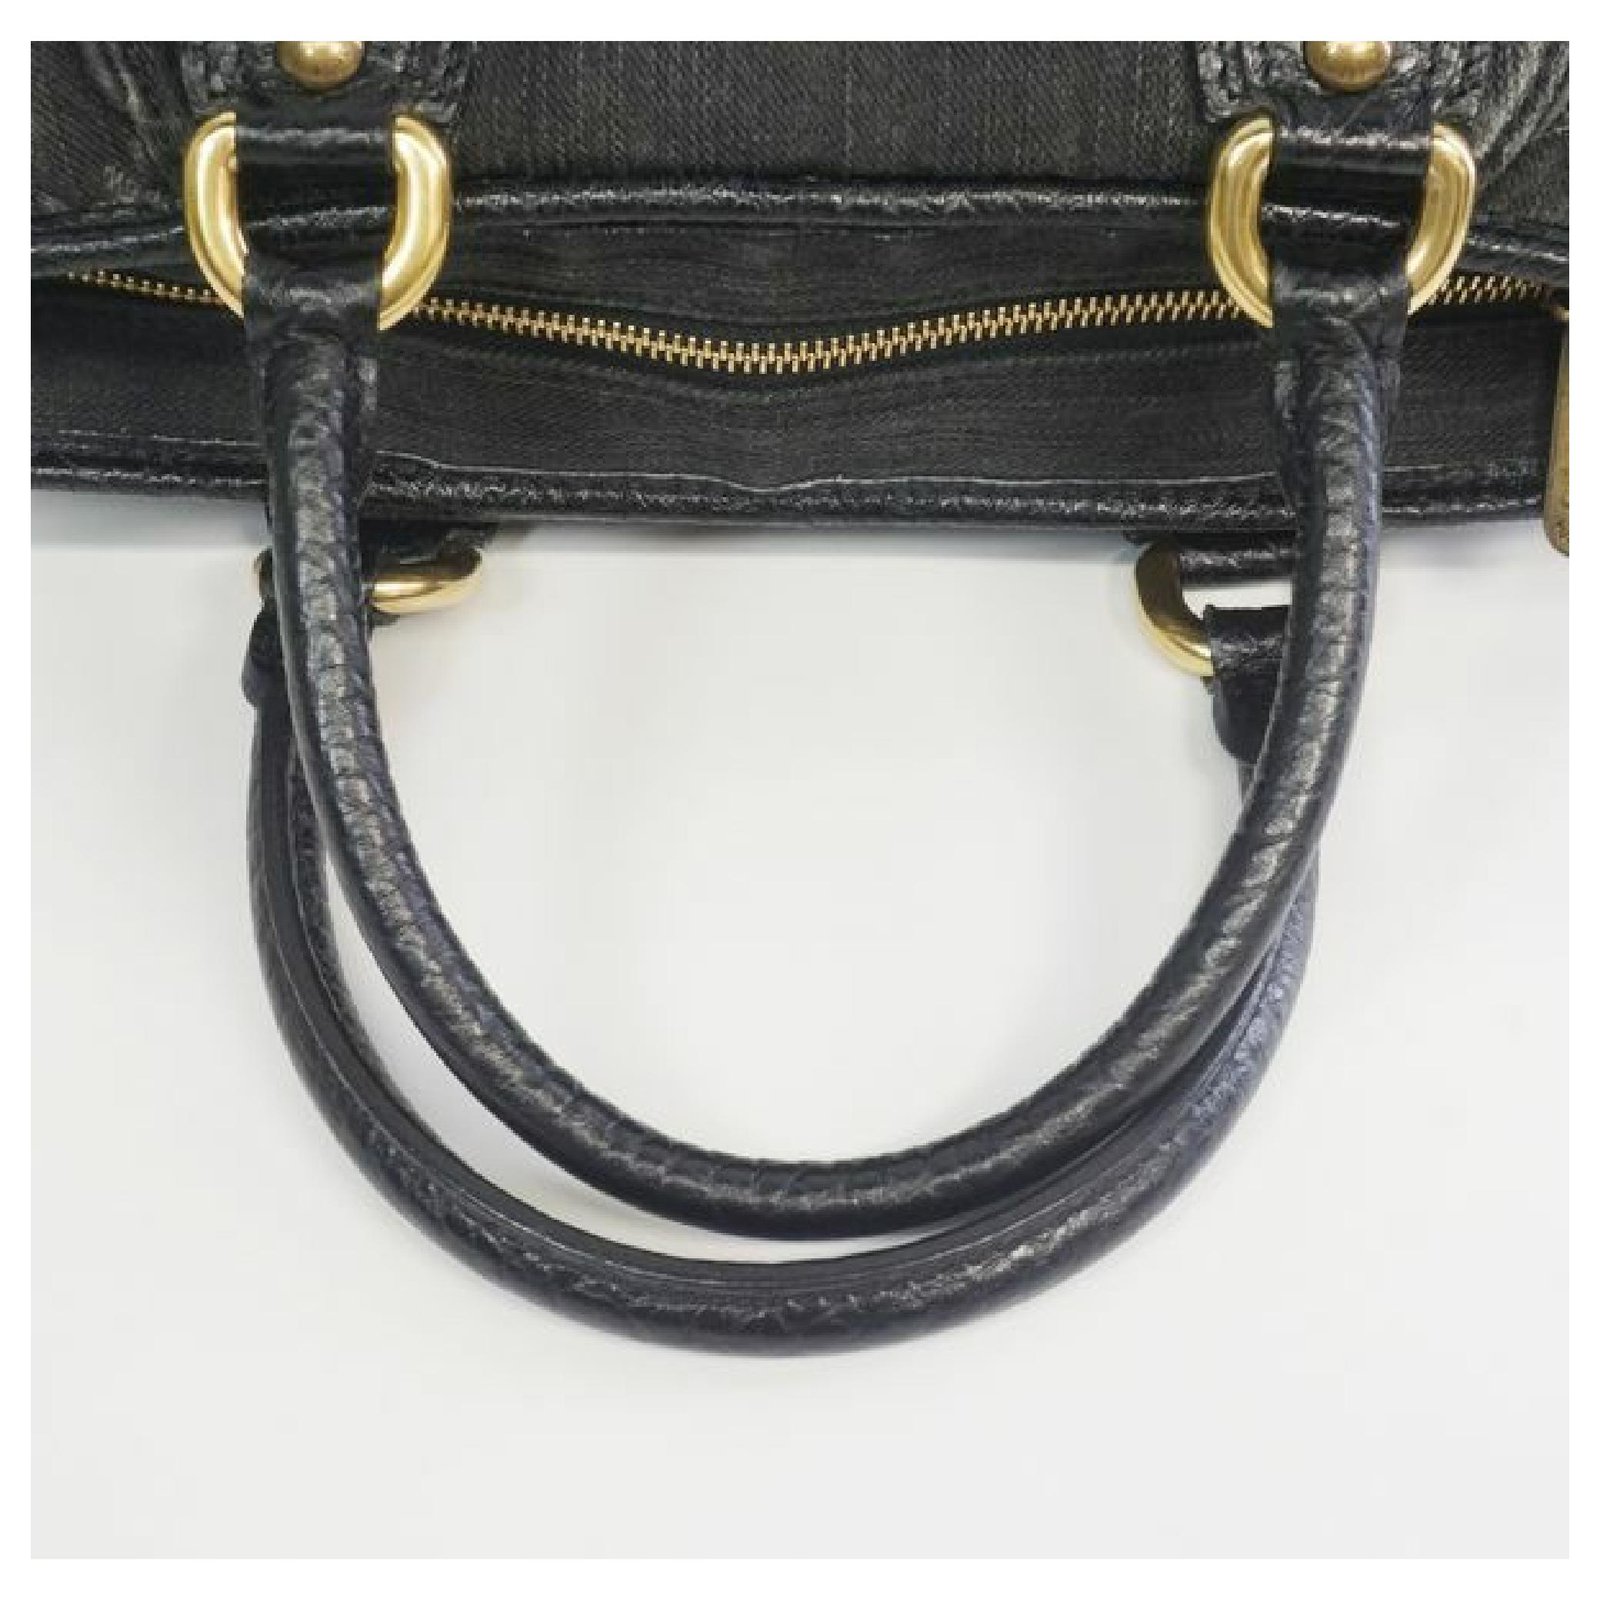 LOUIS VUITTON Authentic M95351 Denim Neo Cabby MM Handbag Noir